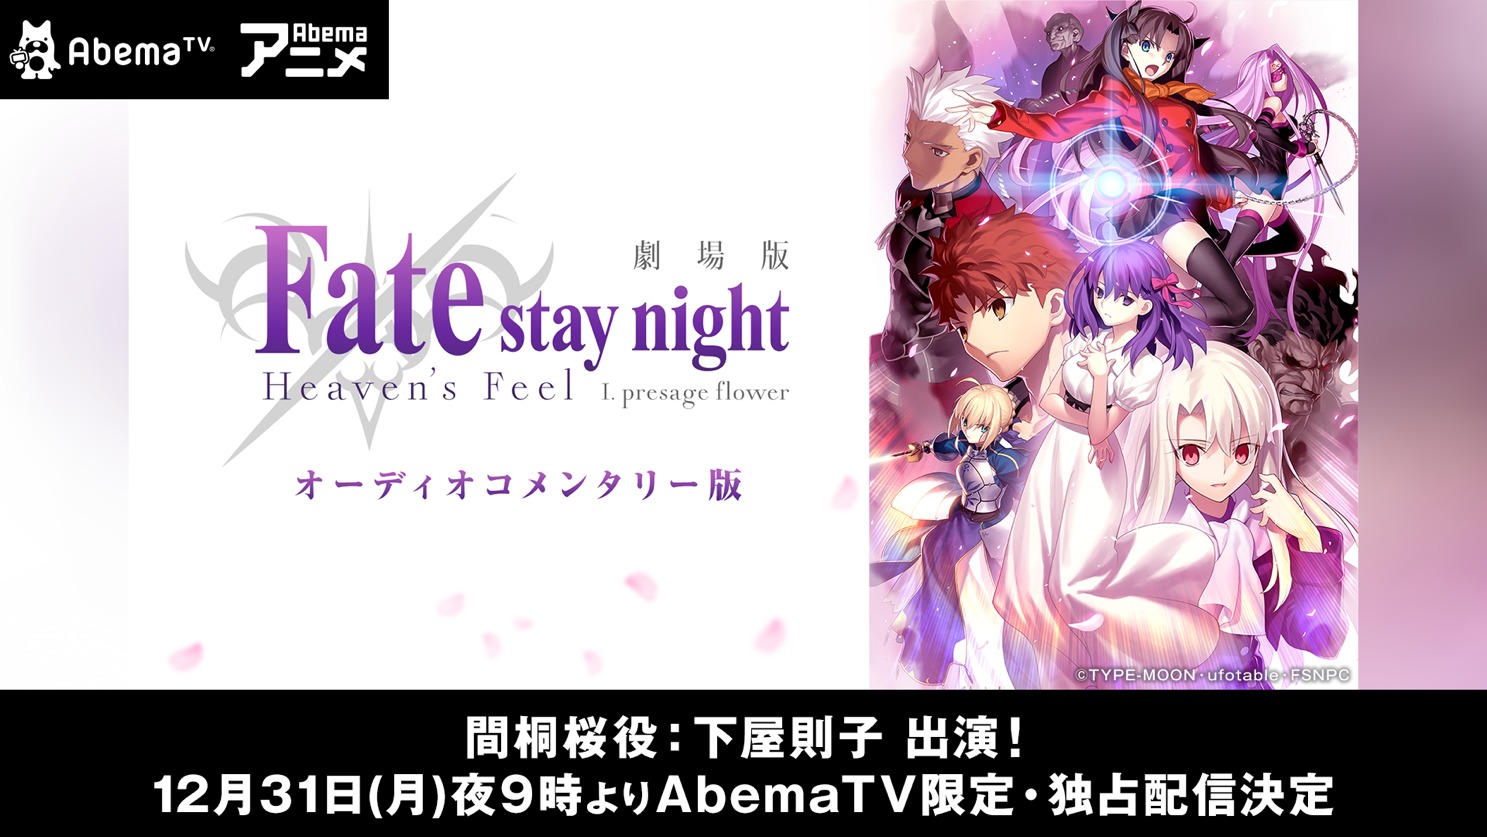 『劇場版「Fate/stay night [Heaven's Feel]」 I.presage flower』AbemaTV限定オーディオコメンタリー版『～もし、わたしがコメンタリーをやったら、許せませんか？～』